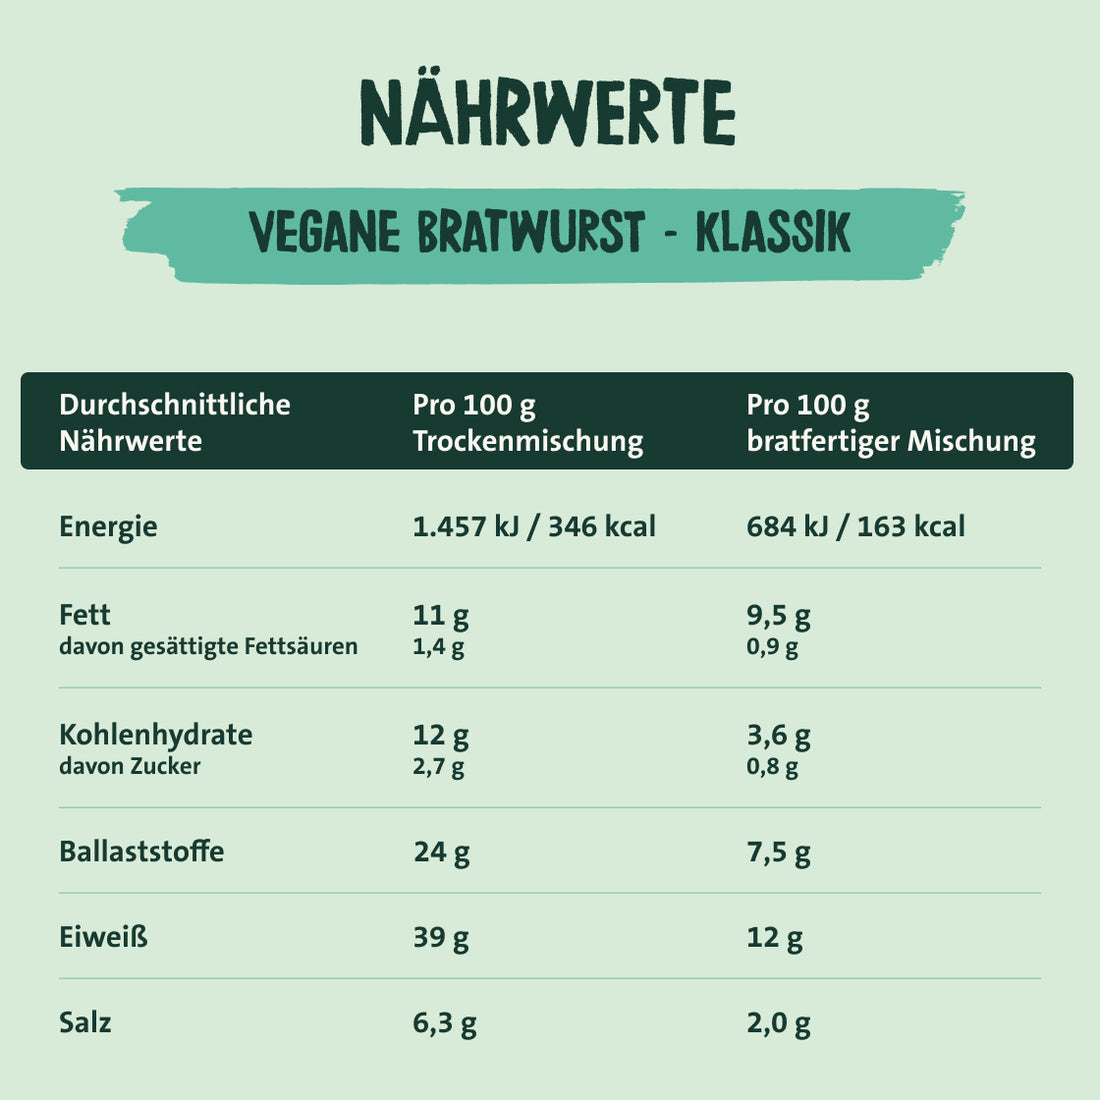 Easy To Mix vegane Bratwurst - Klassik